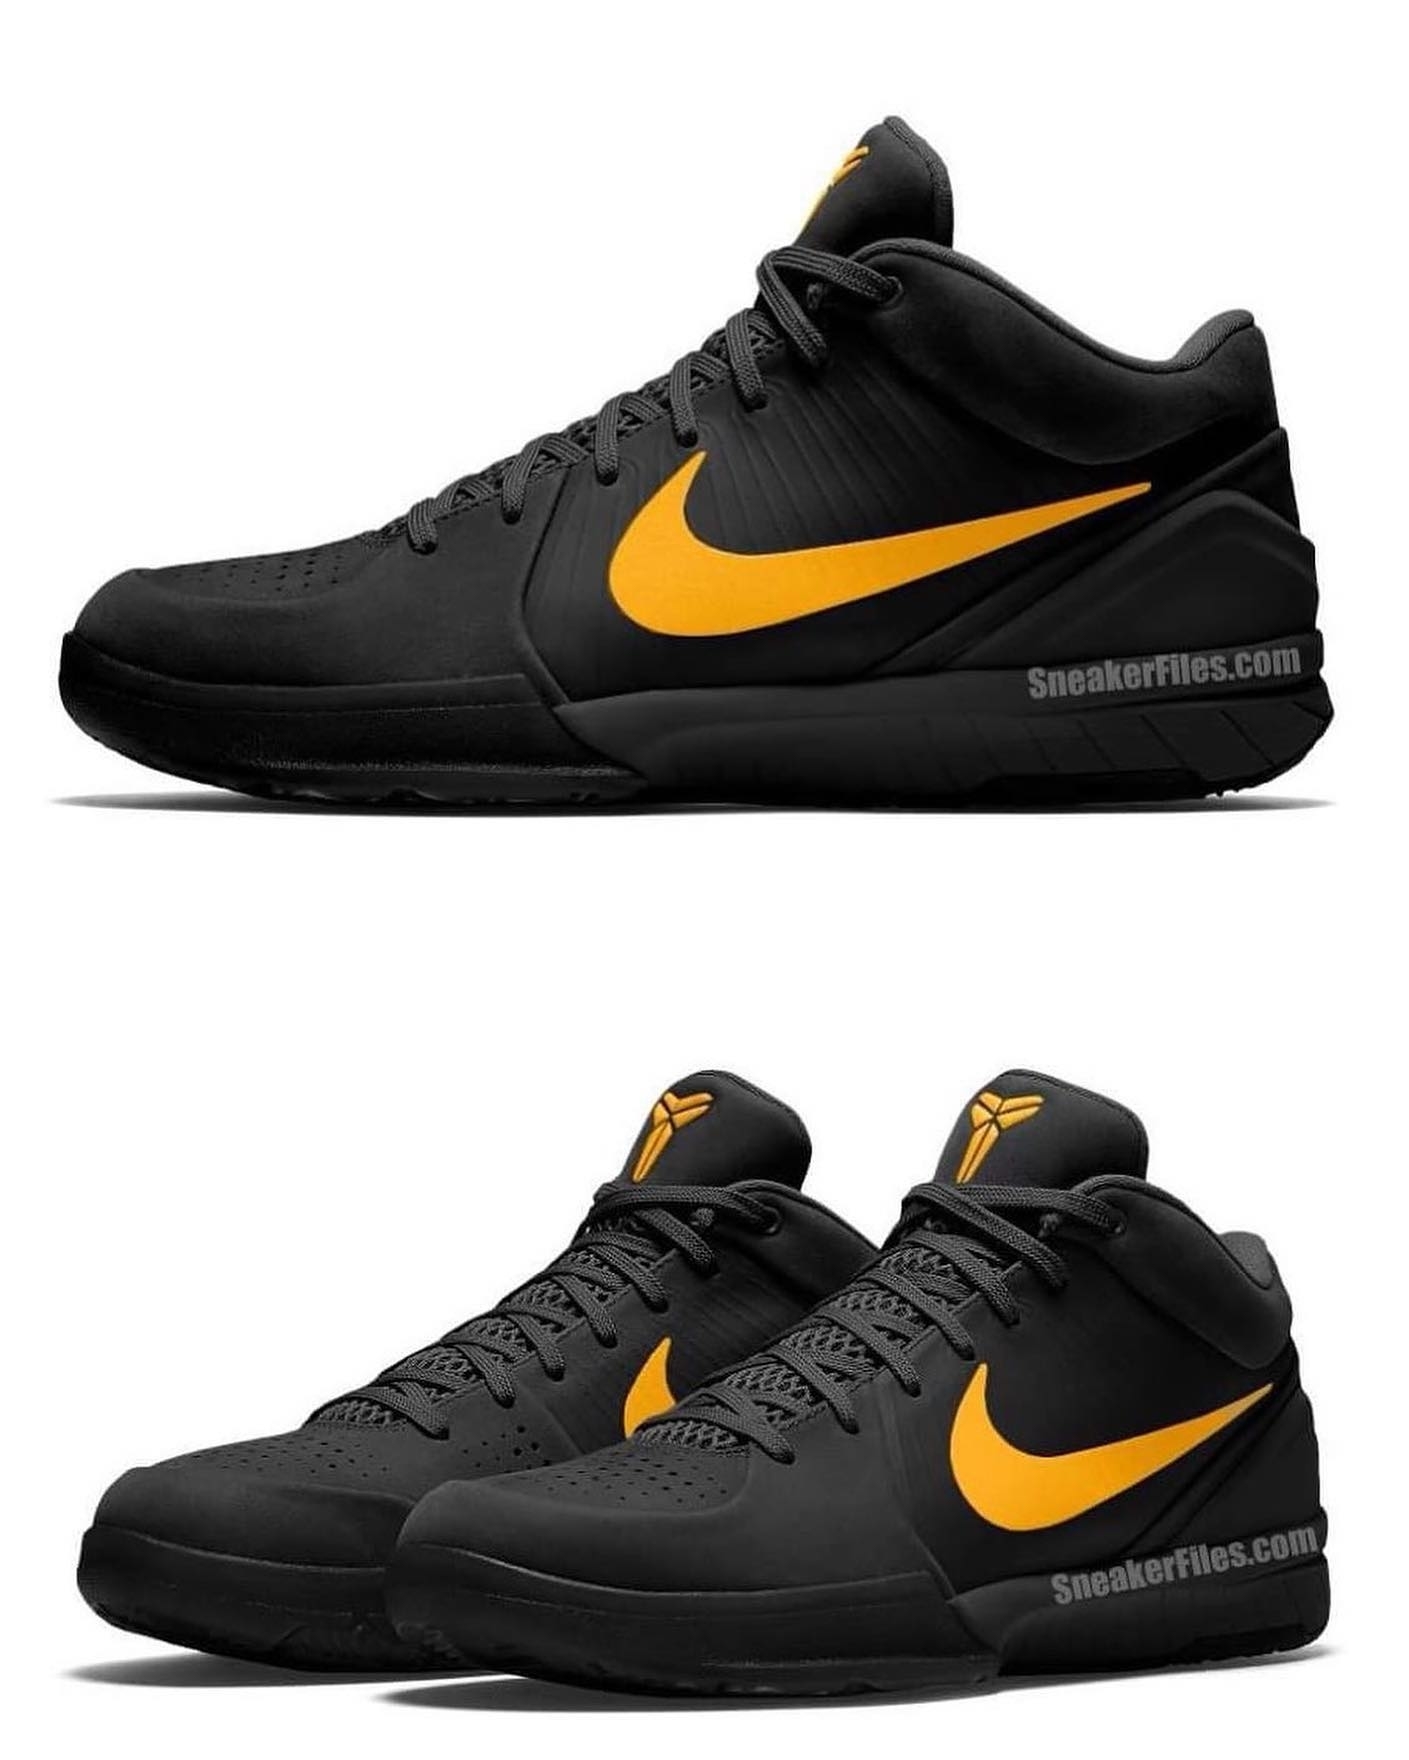 Nike Kobe 4 Protro 'Black/Gold' FQ3544-001 Release Date | Complex